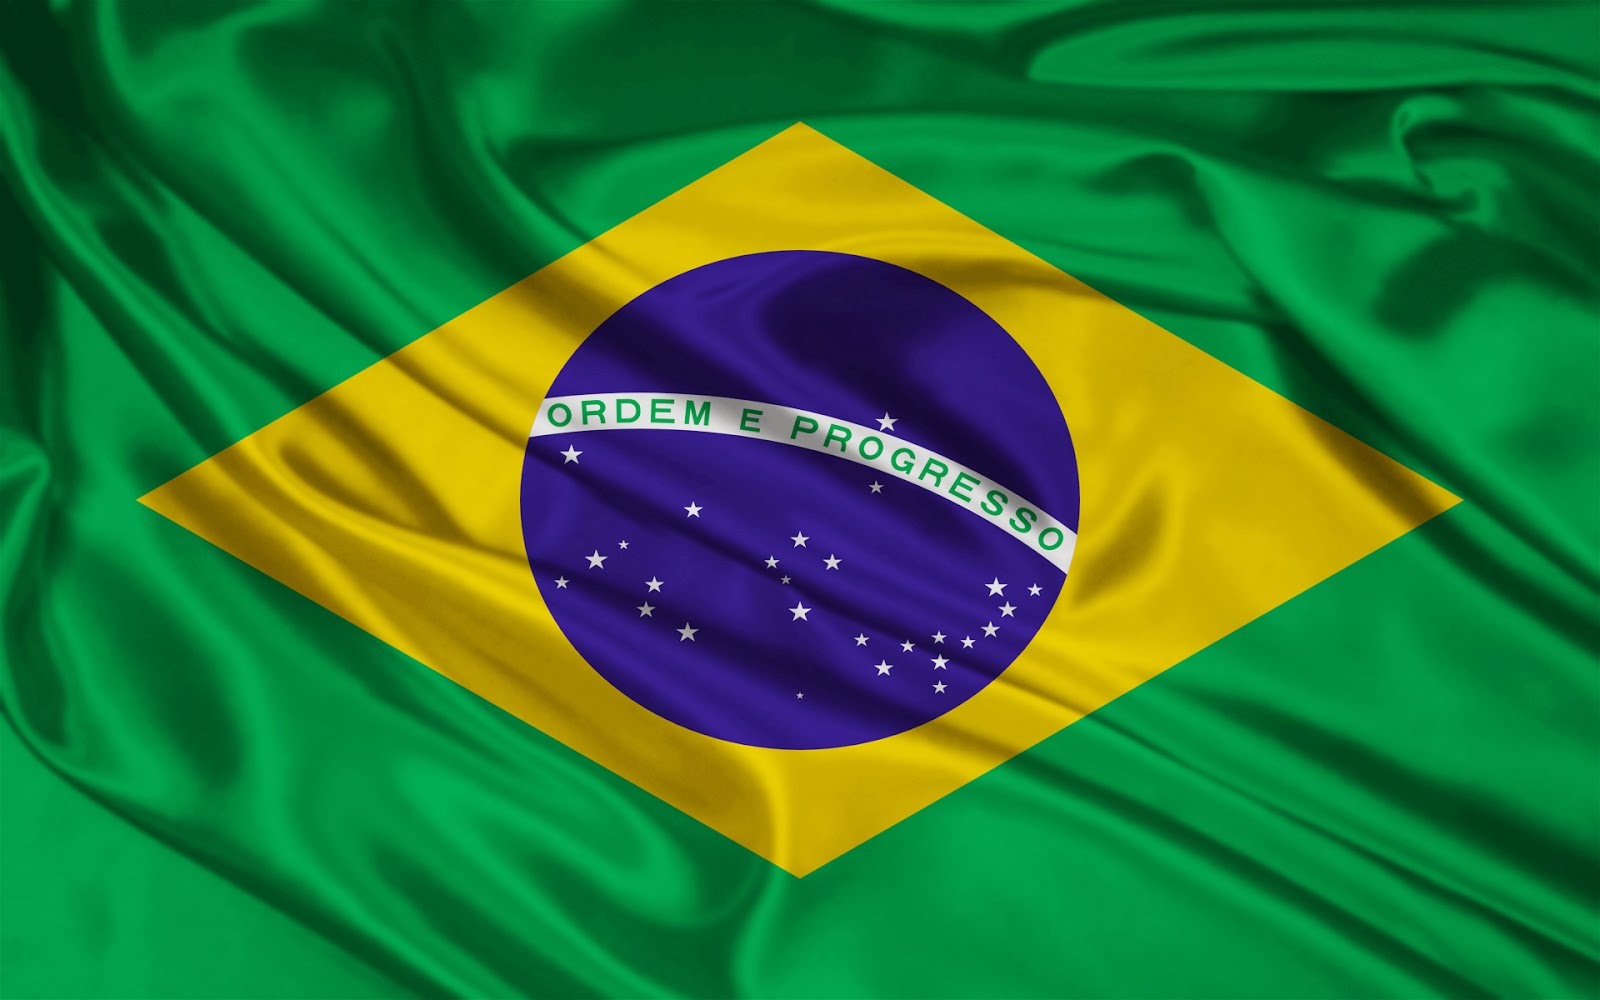 Gambar Bendera Negara Brazil GAMBAR BENDERA NEGARA